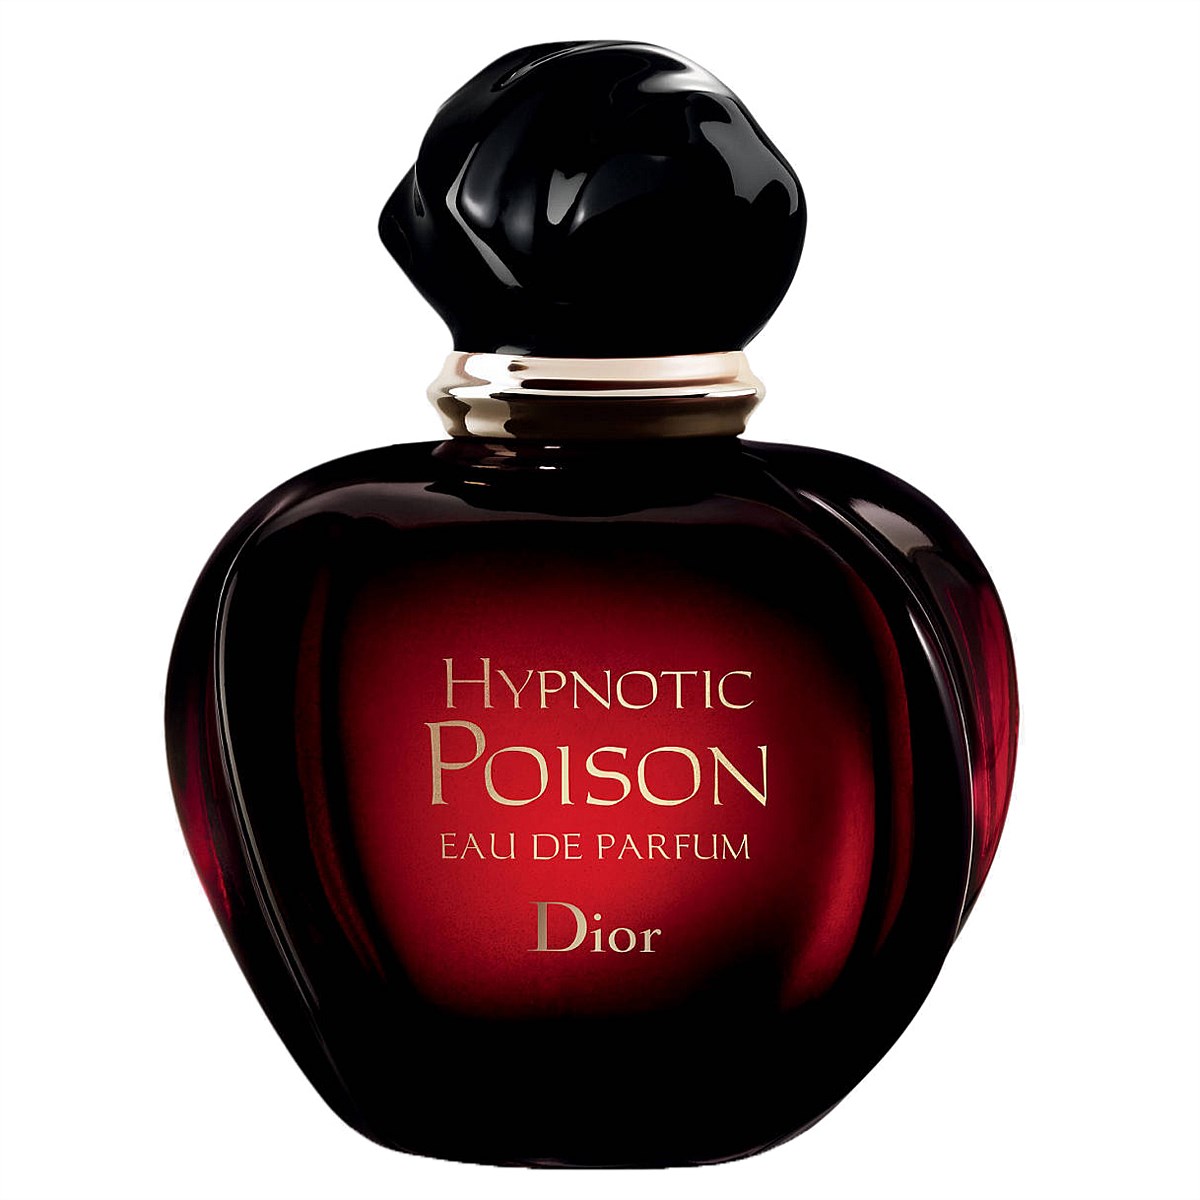 ≫ Christian Dior Hypnotic Poison > Comprar, Precio y Opinión 2023